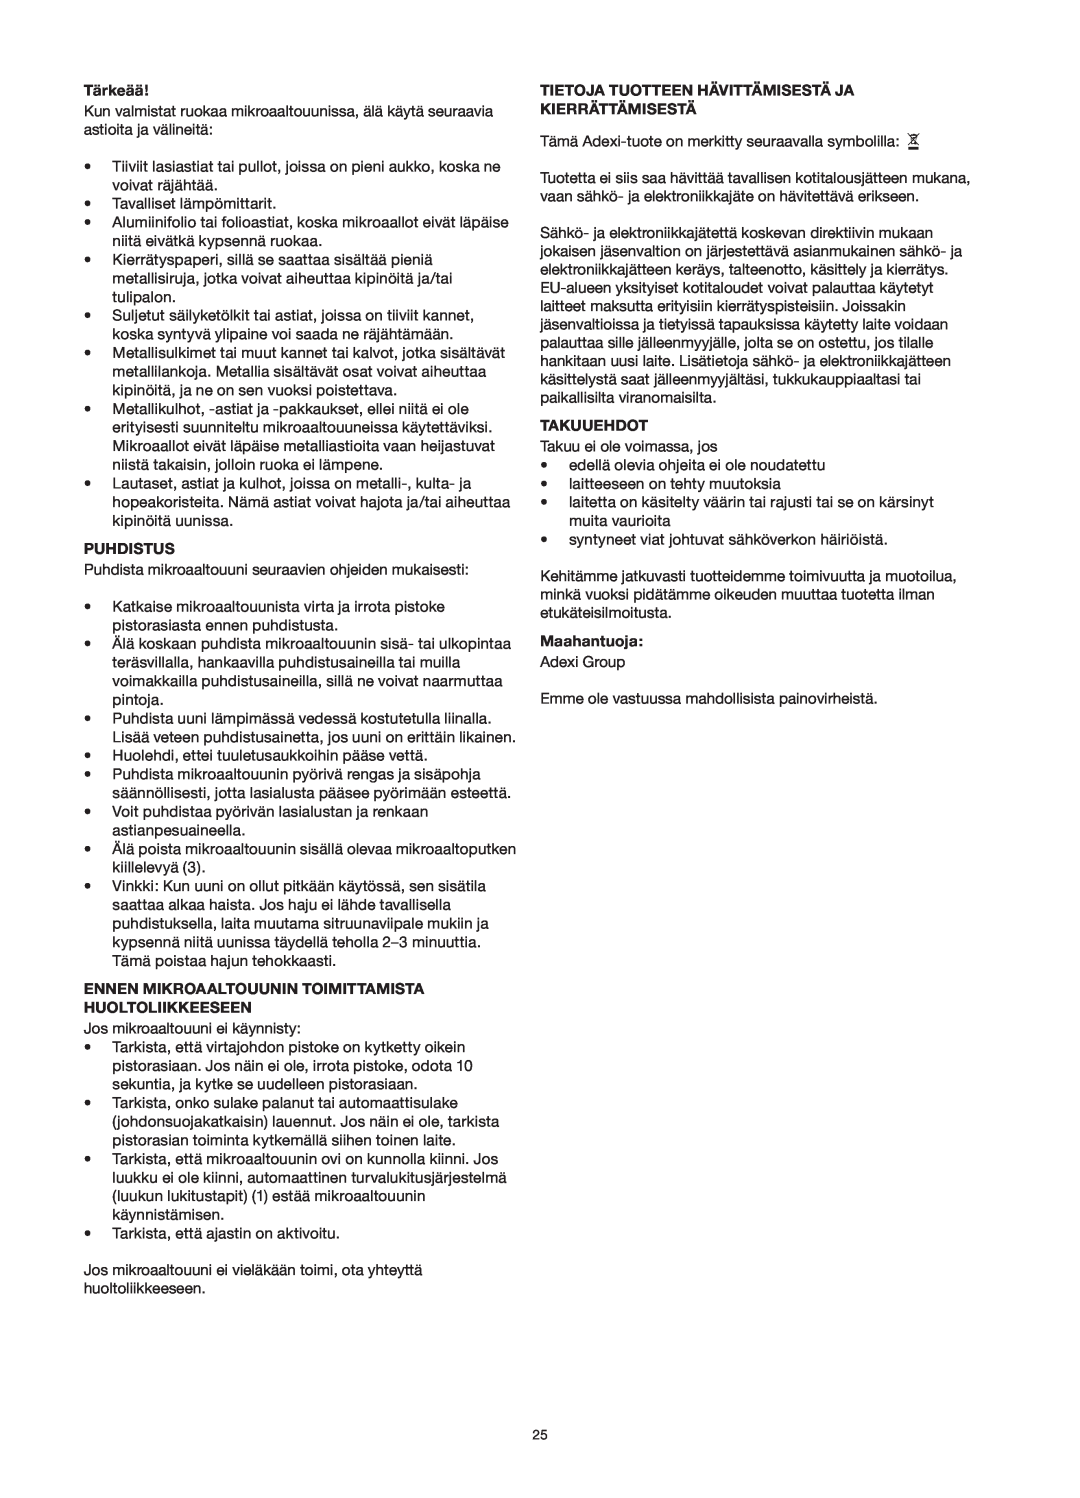 Melissa 253-013 manual Tärkeää, Puhdistus, Ennen Mikroaaltouunin Toimittamista Huoltoliikkeeseen, Takuuehdot, Maahantuoja 